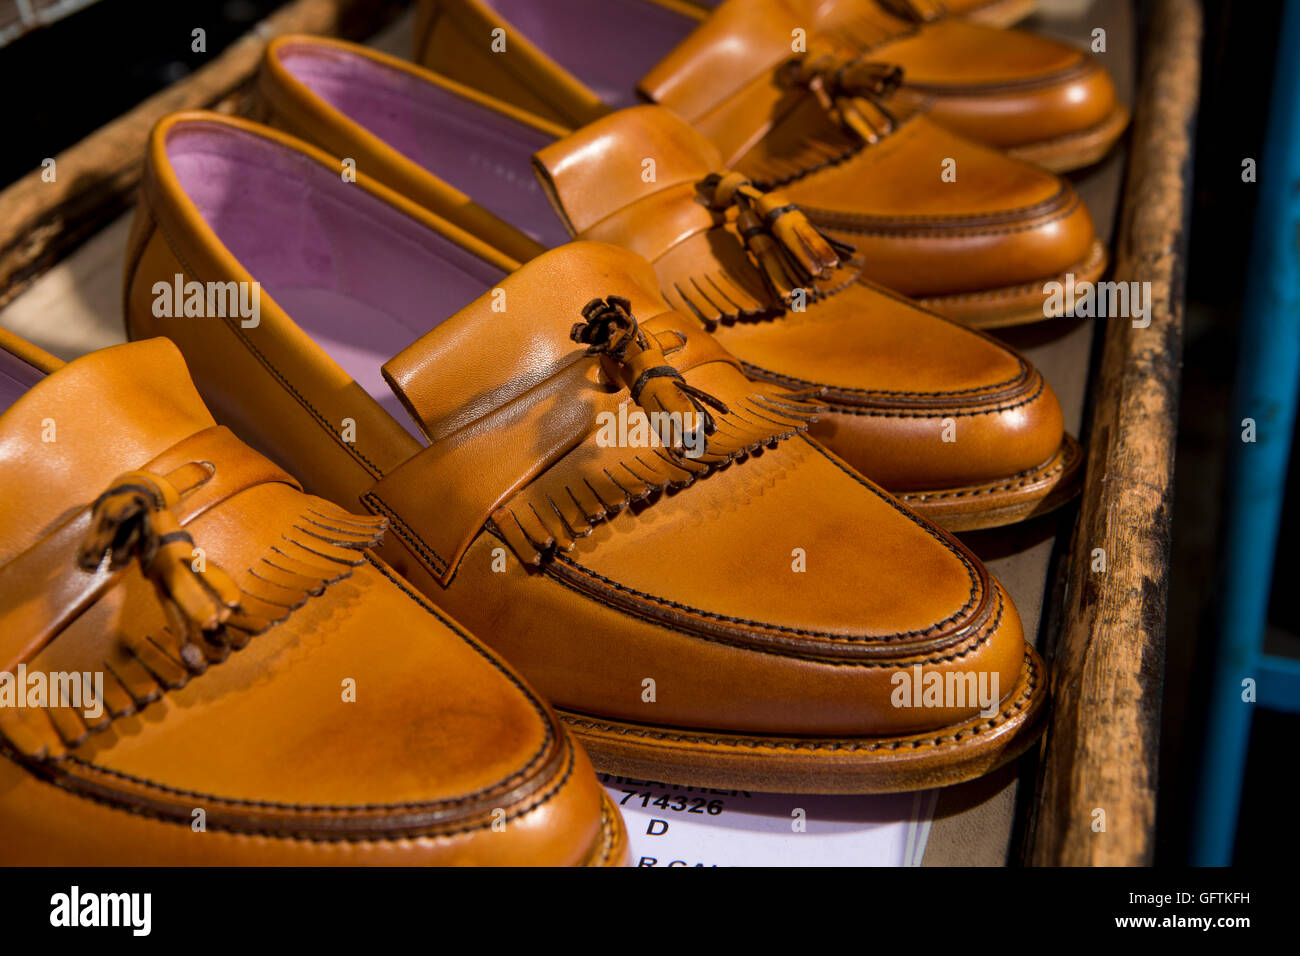 Royaume-uni, Angleterre, Northamptonshire, Earls Barton, Barker's, ligne de chaussures en cuir fait main Banque D'Images